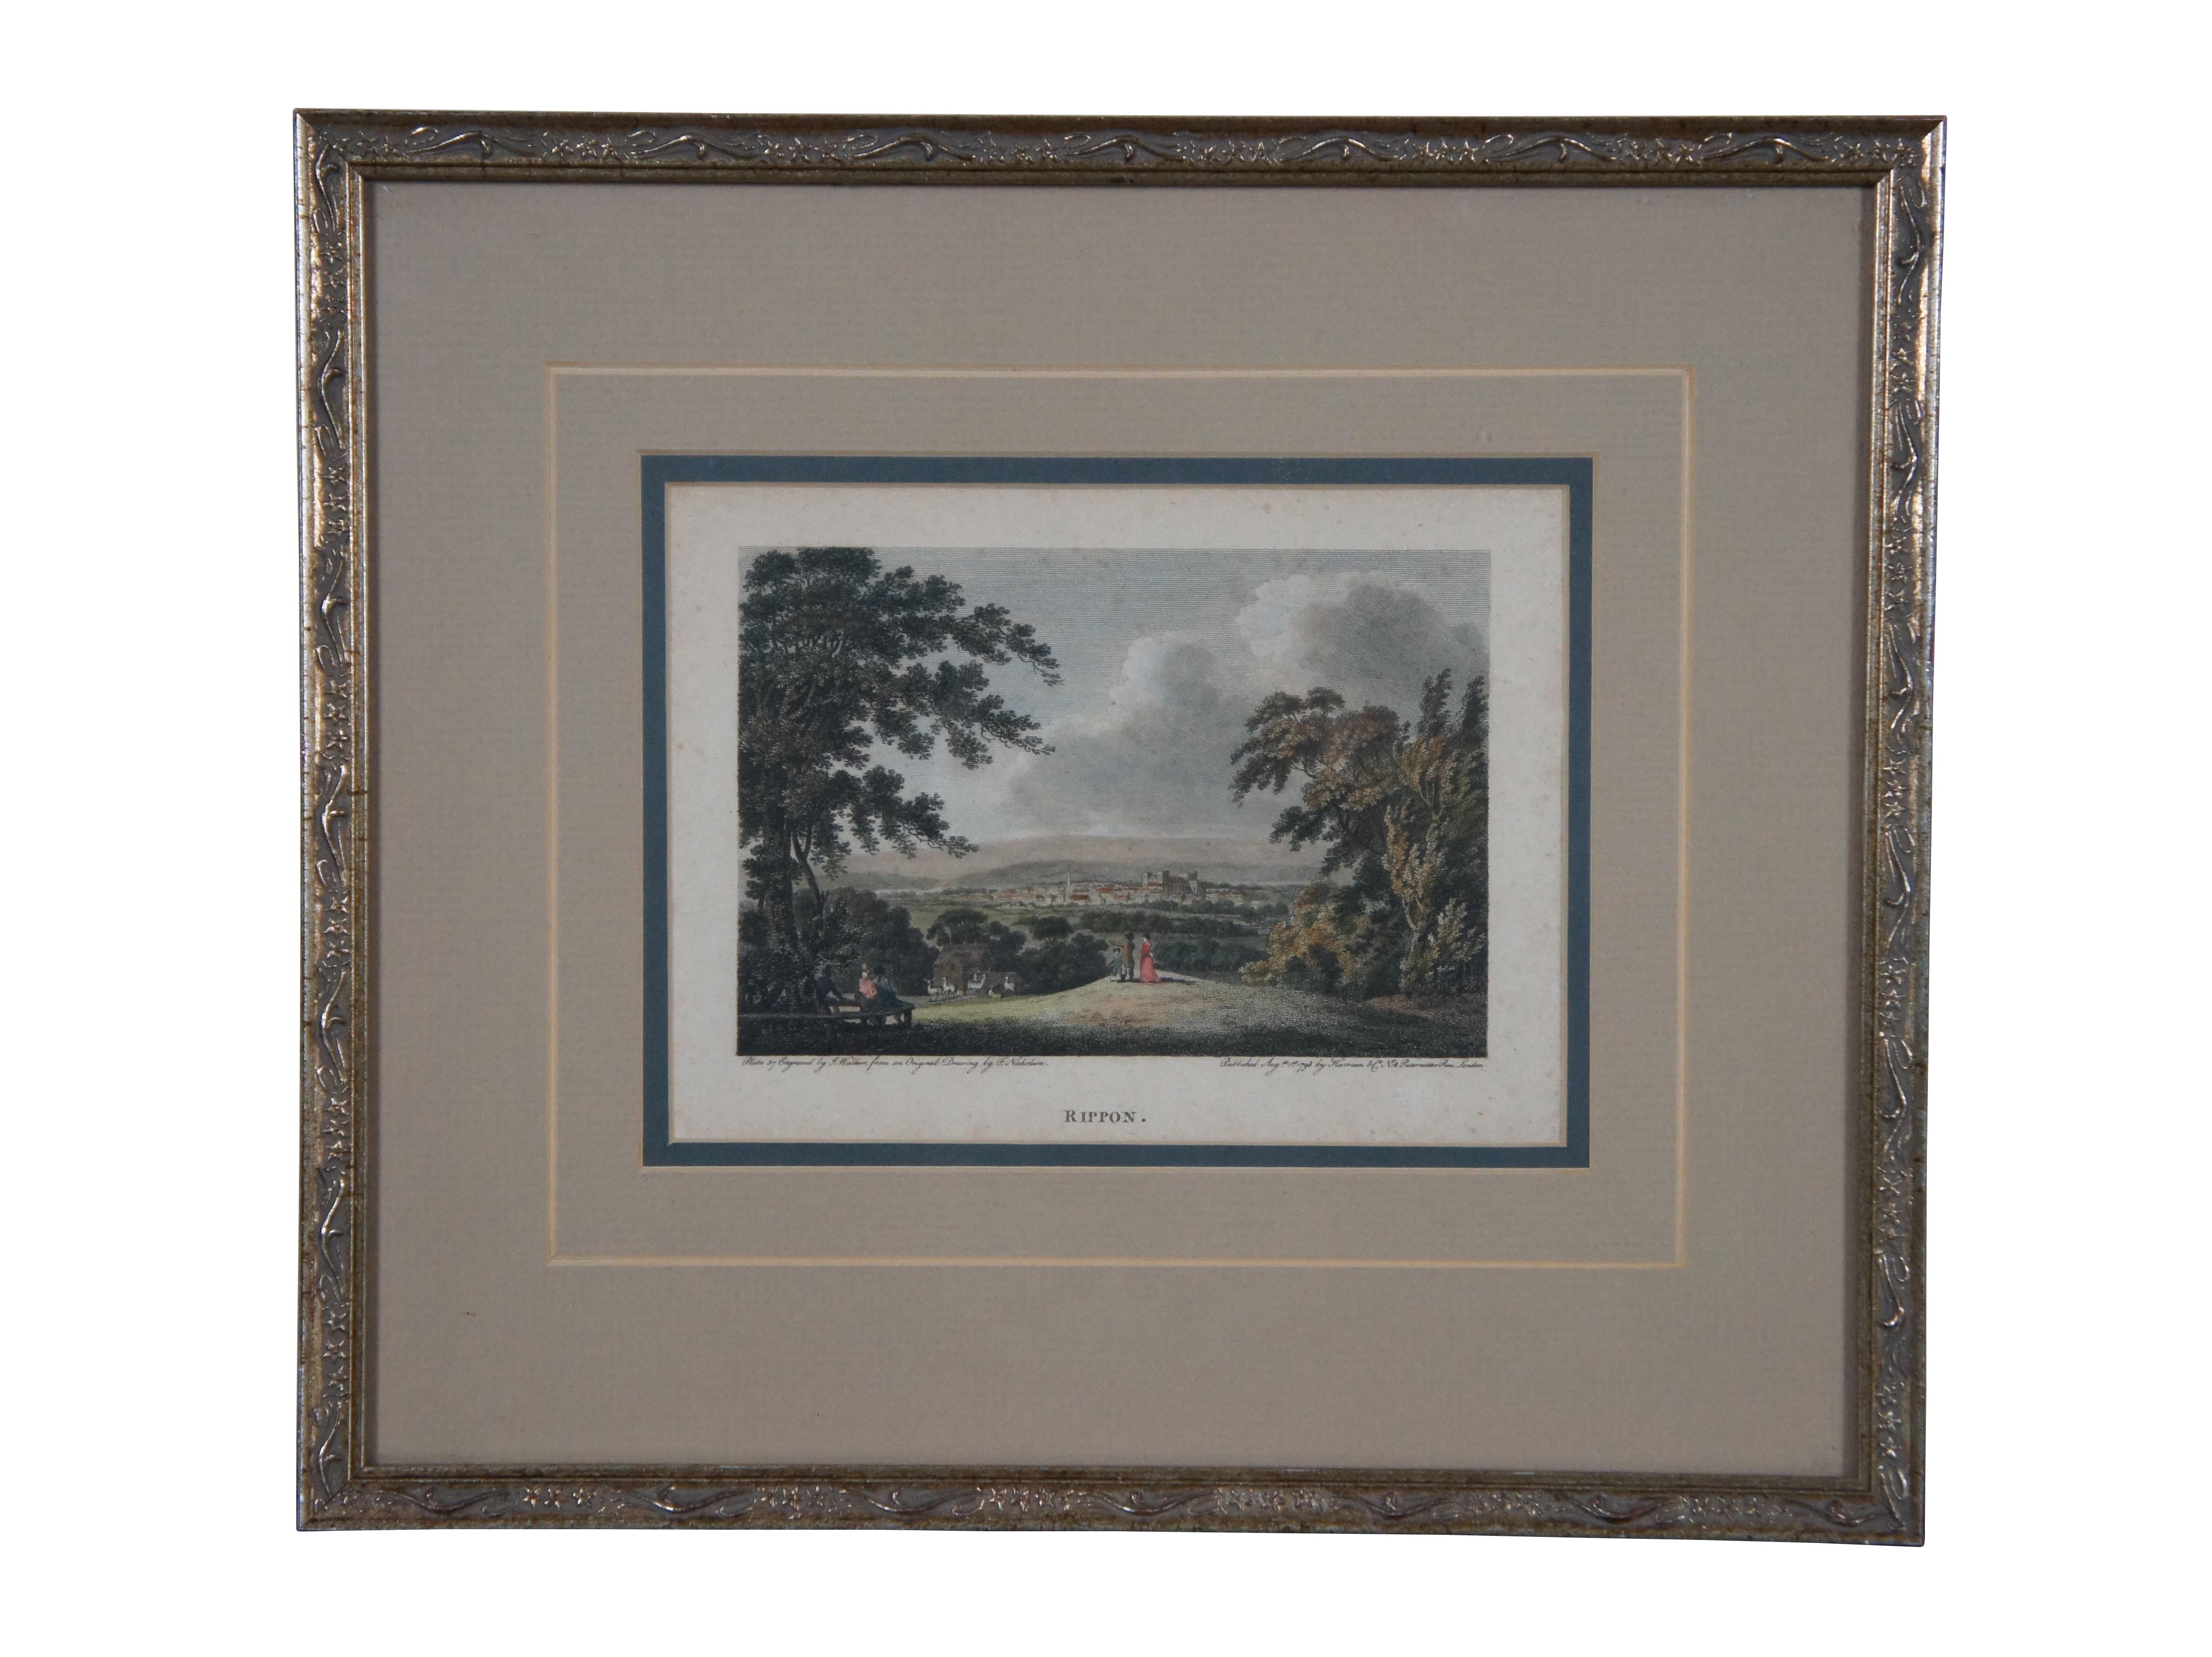 Paire de gravures de paysages du 18e siècle encadrées et coloriées à la main. L'un d'eux représente Rippon - planche 37 gravée par J. Walker d'après un dessin original de F. Nicholson / publiée le 1er août 1793 par Harrison & Co N.18 Paternoster